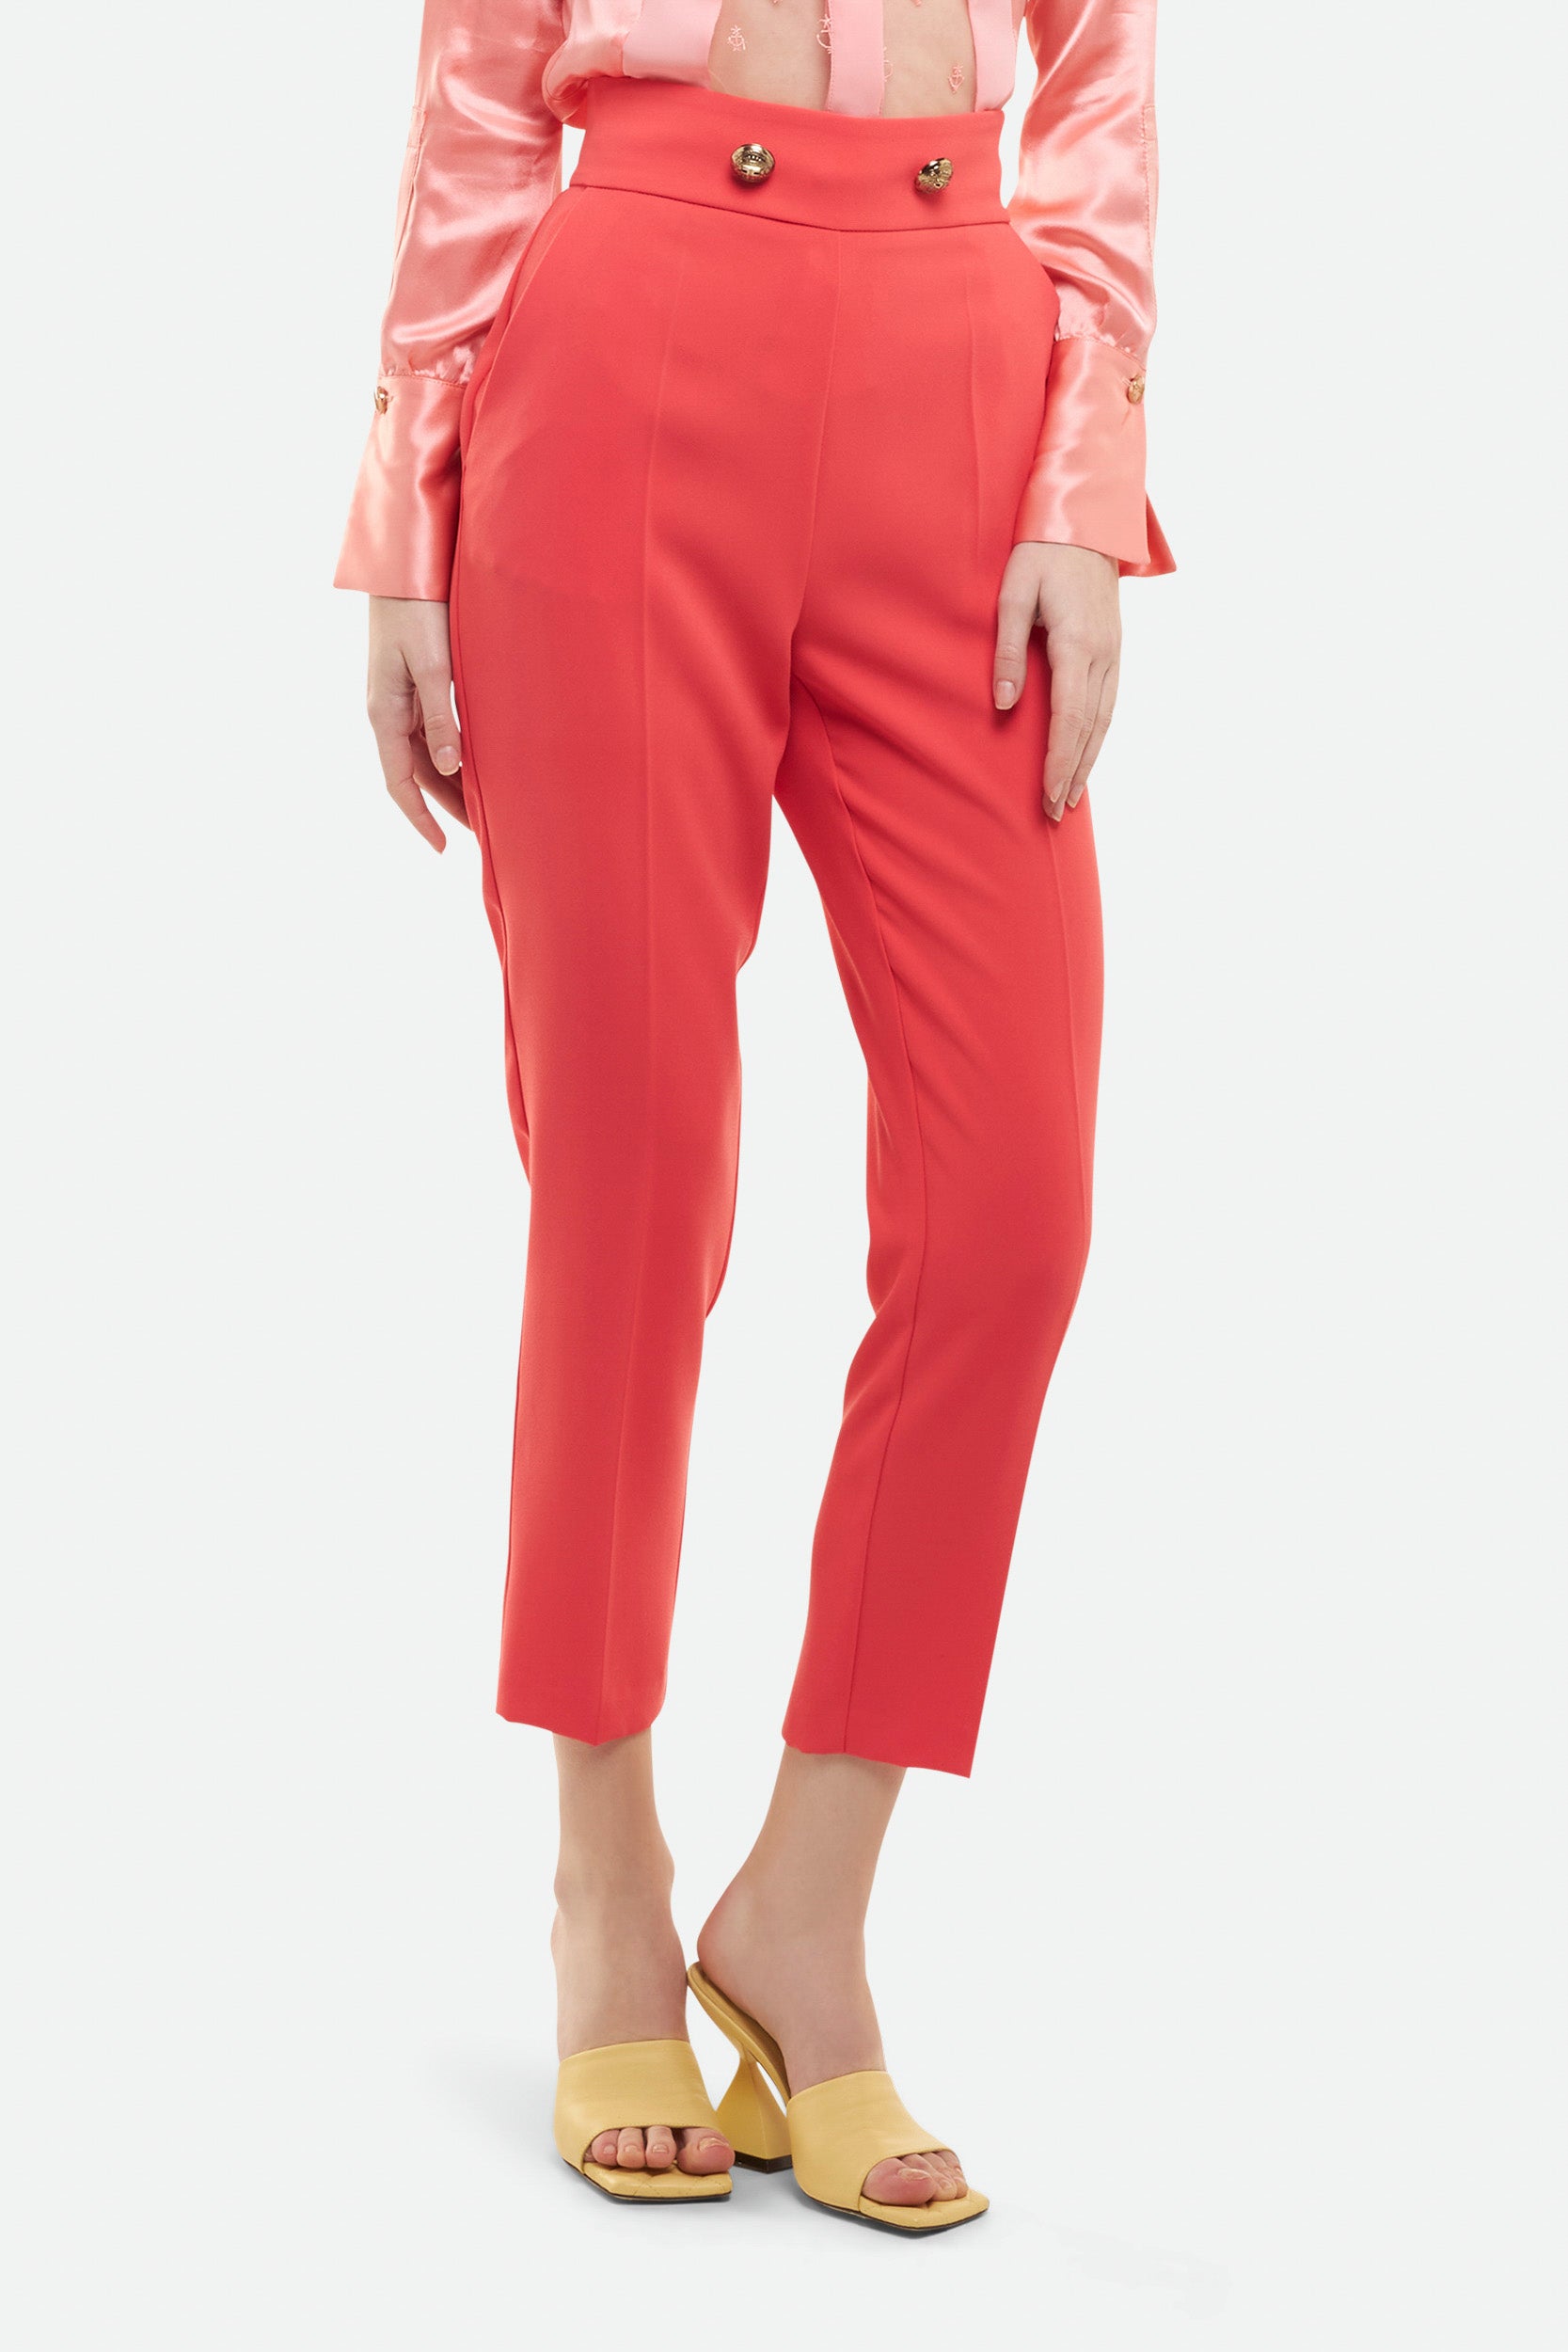 Elisabetta Franchi Grapefruit trousers